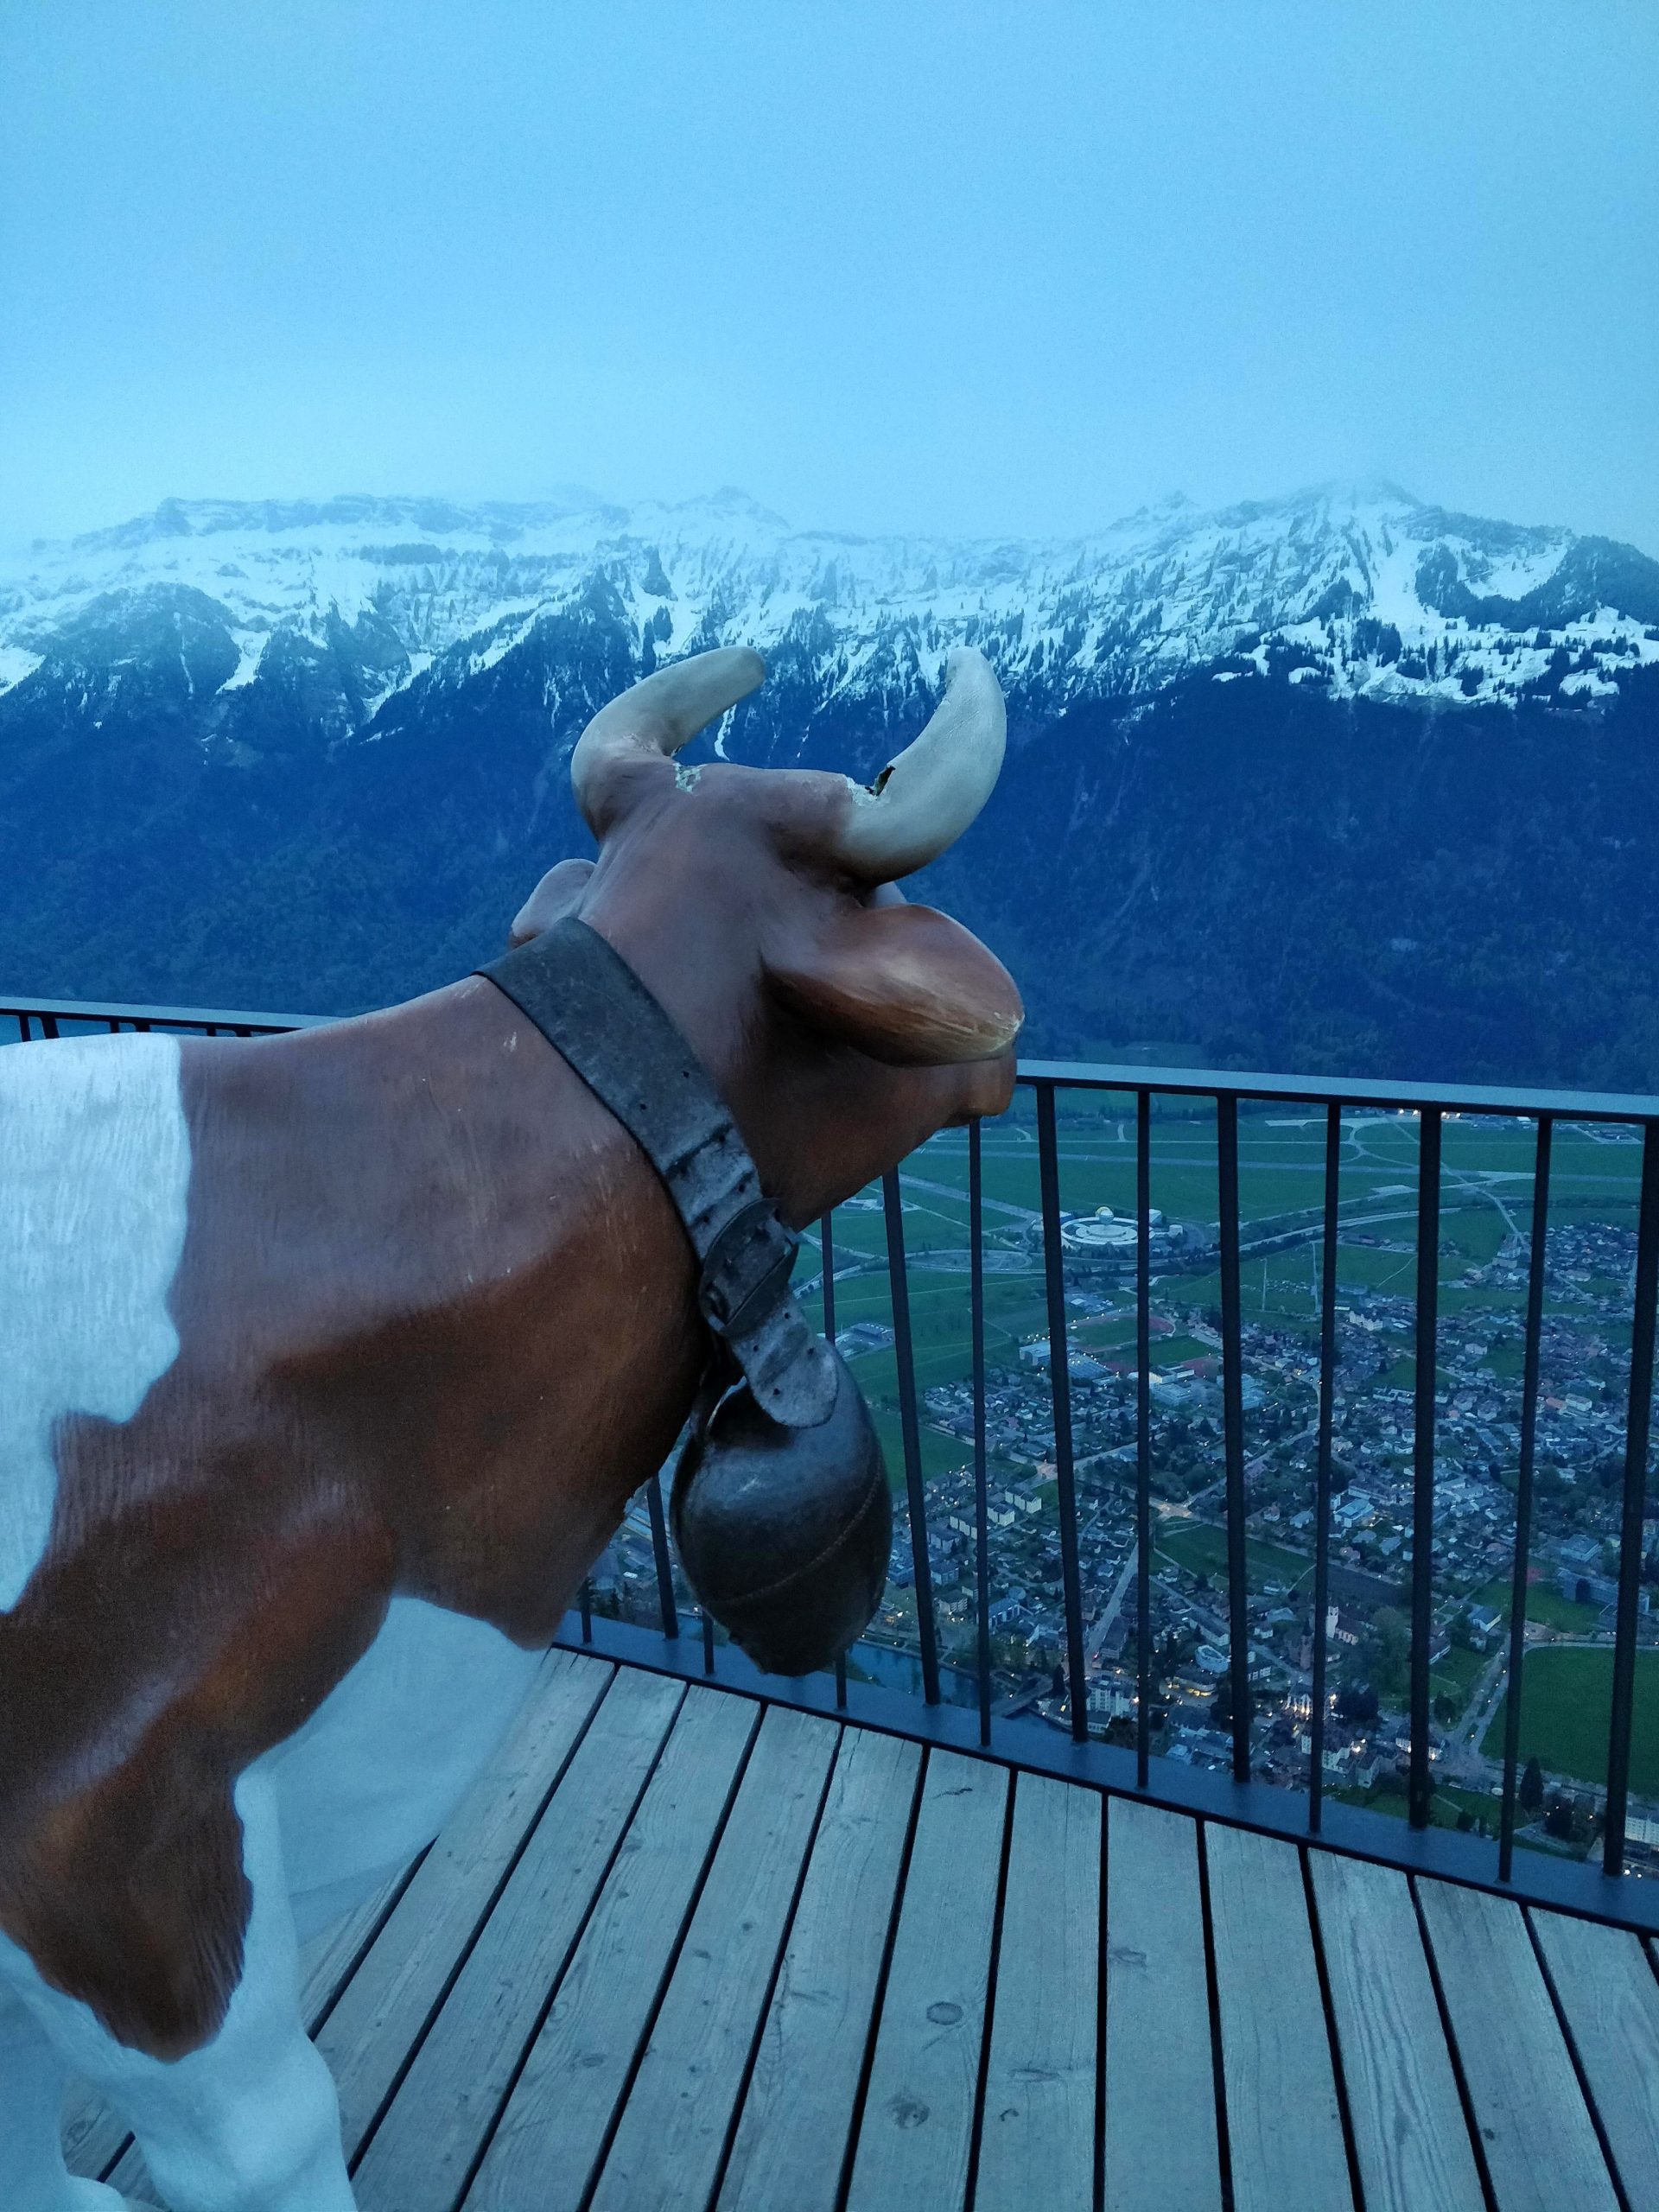 Interlaken – The Cow Whisperer at Harder Kulm!